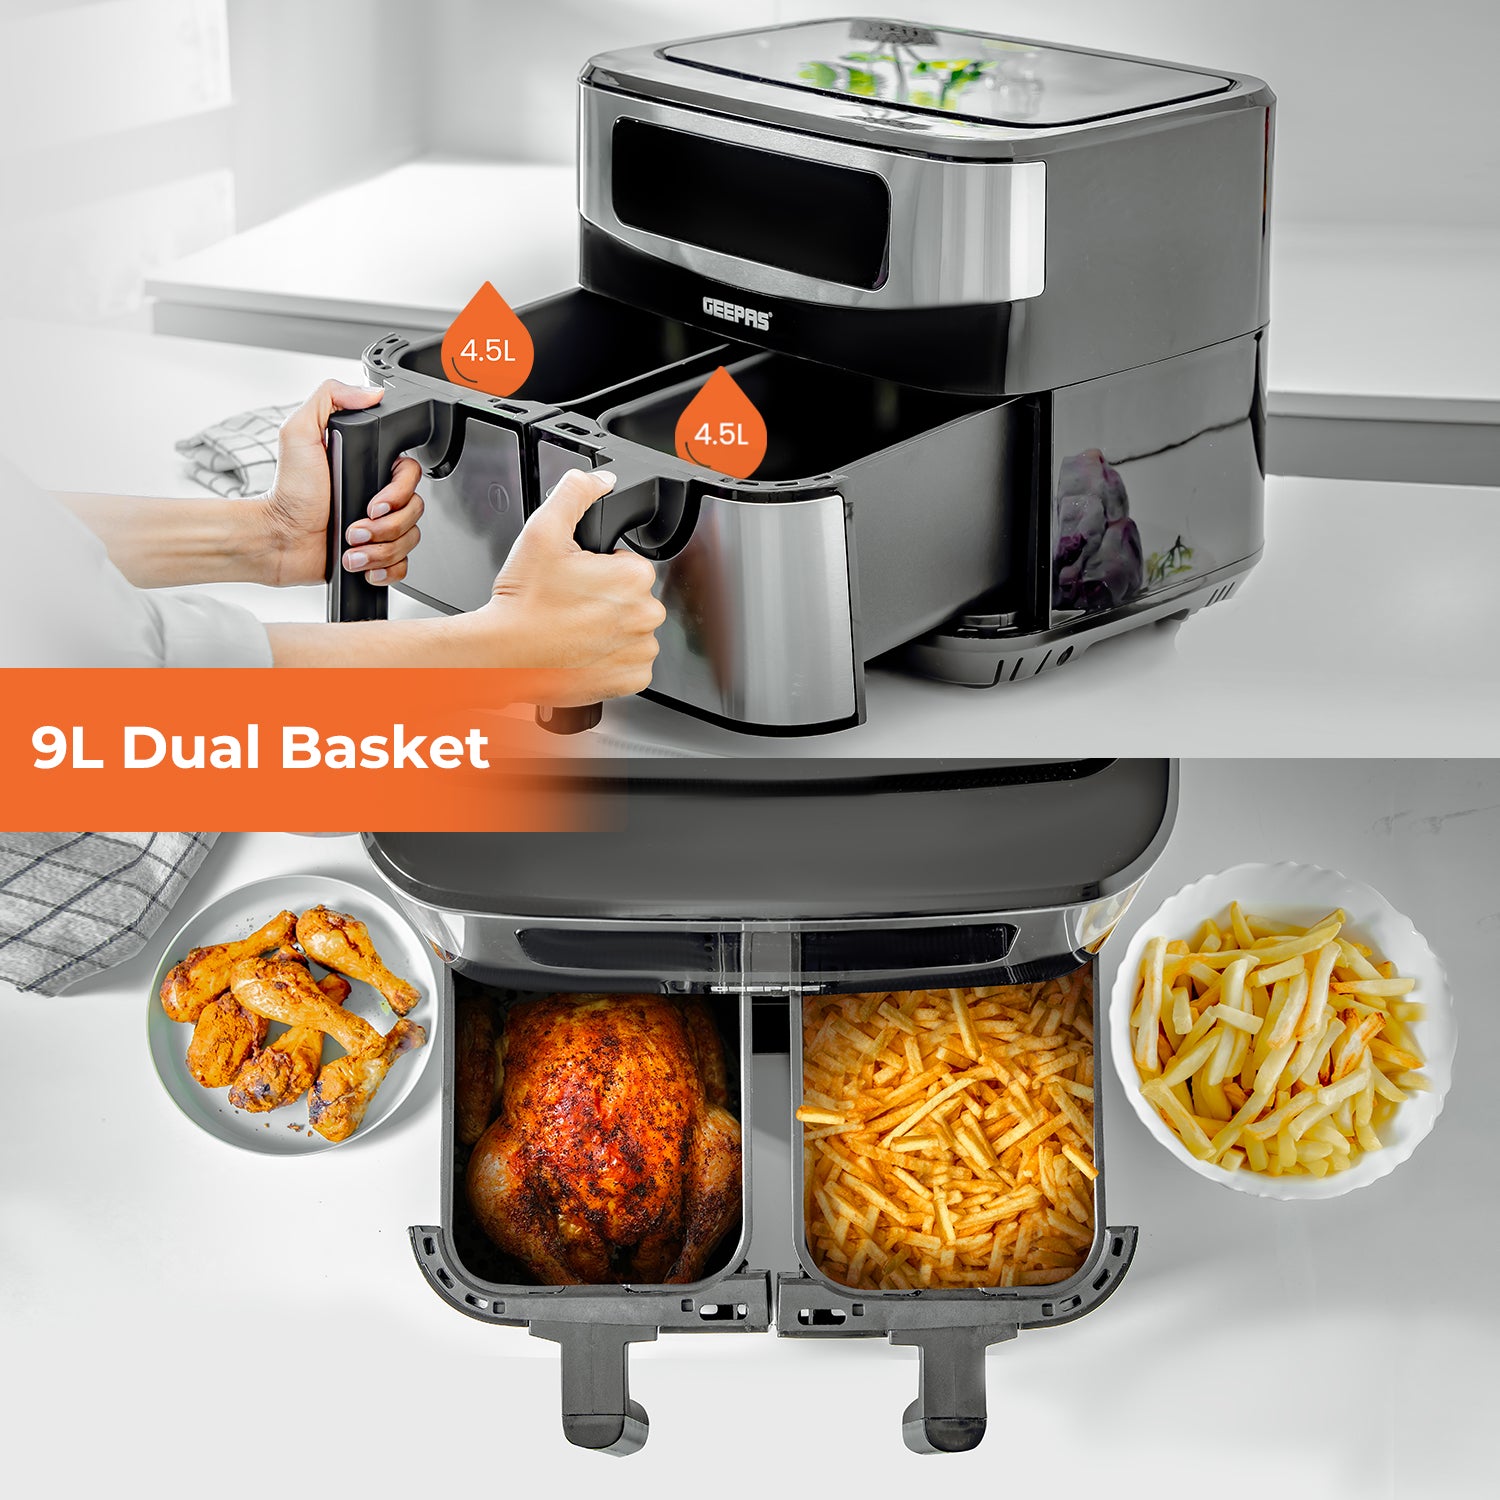 10-In-1 Vortex Dual Basket Air Fryer 9L + Free Recipe E-Book